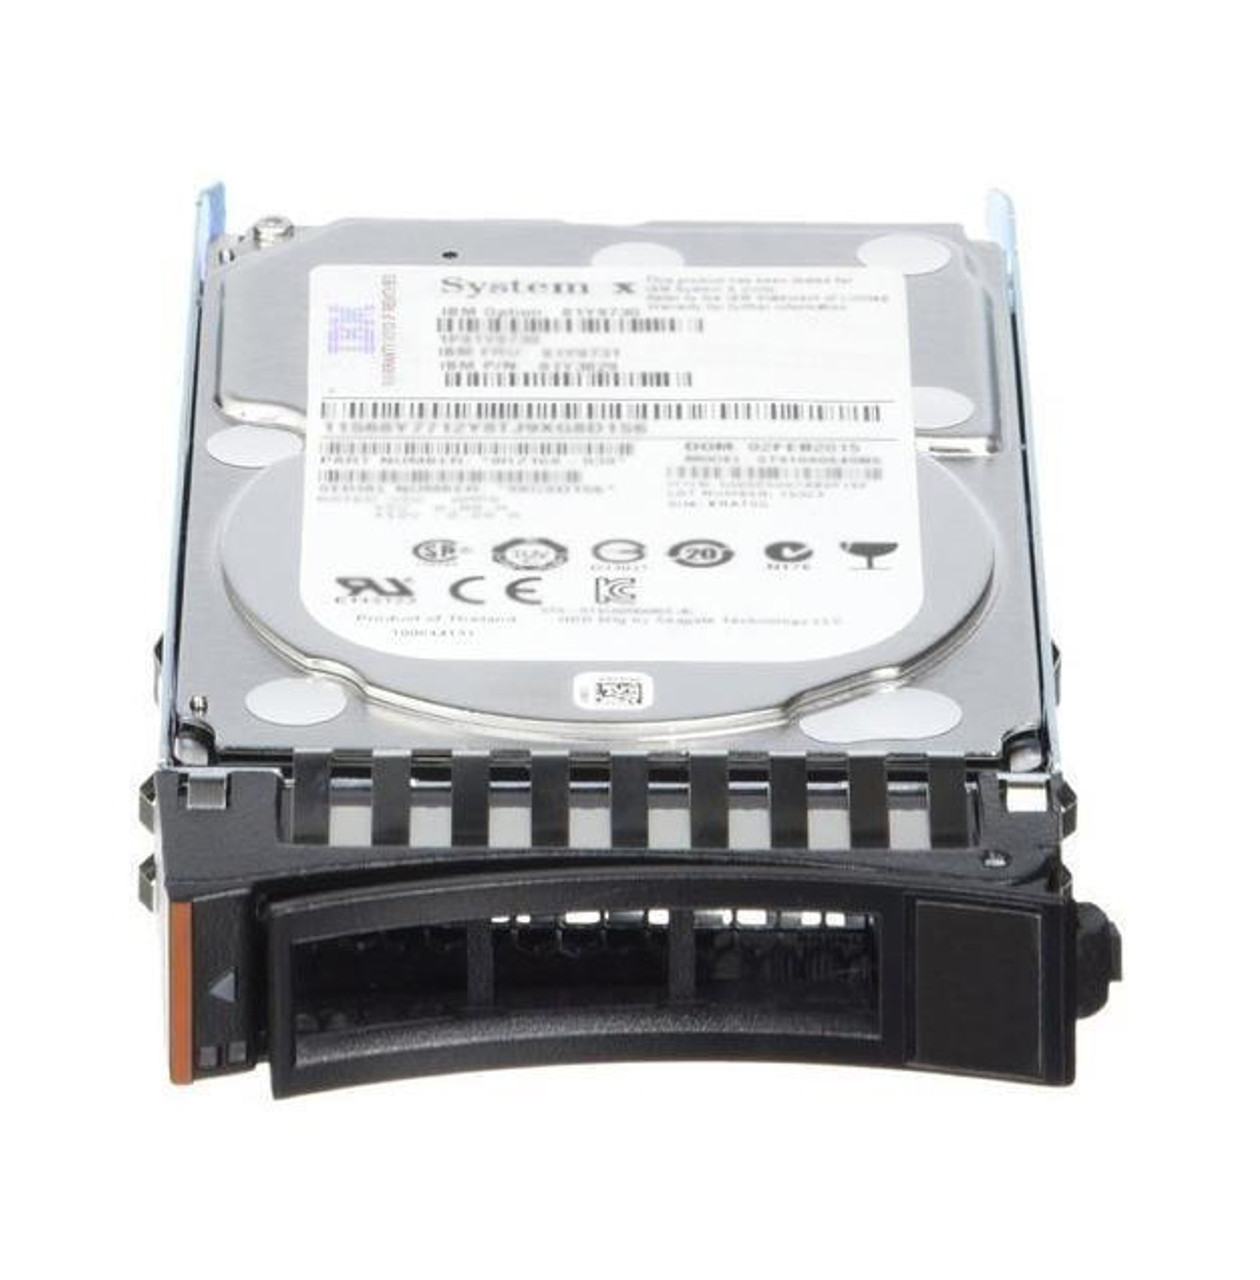 01DE333 Lenovo 600GB 15000RPM SAS 12Gbps Hot Swap 3.5-inch Internal Hard Drive for Storage V3700 V2